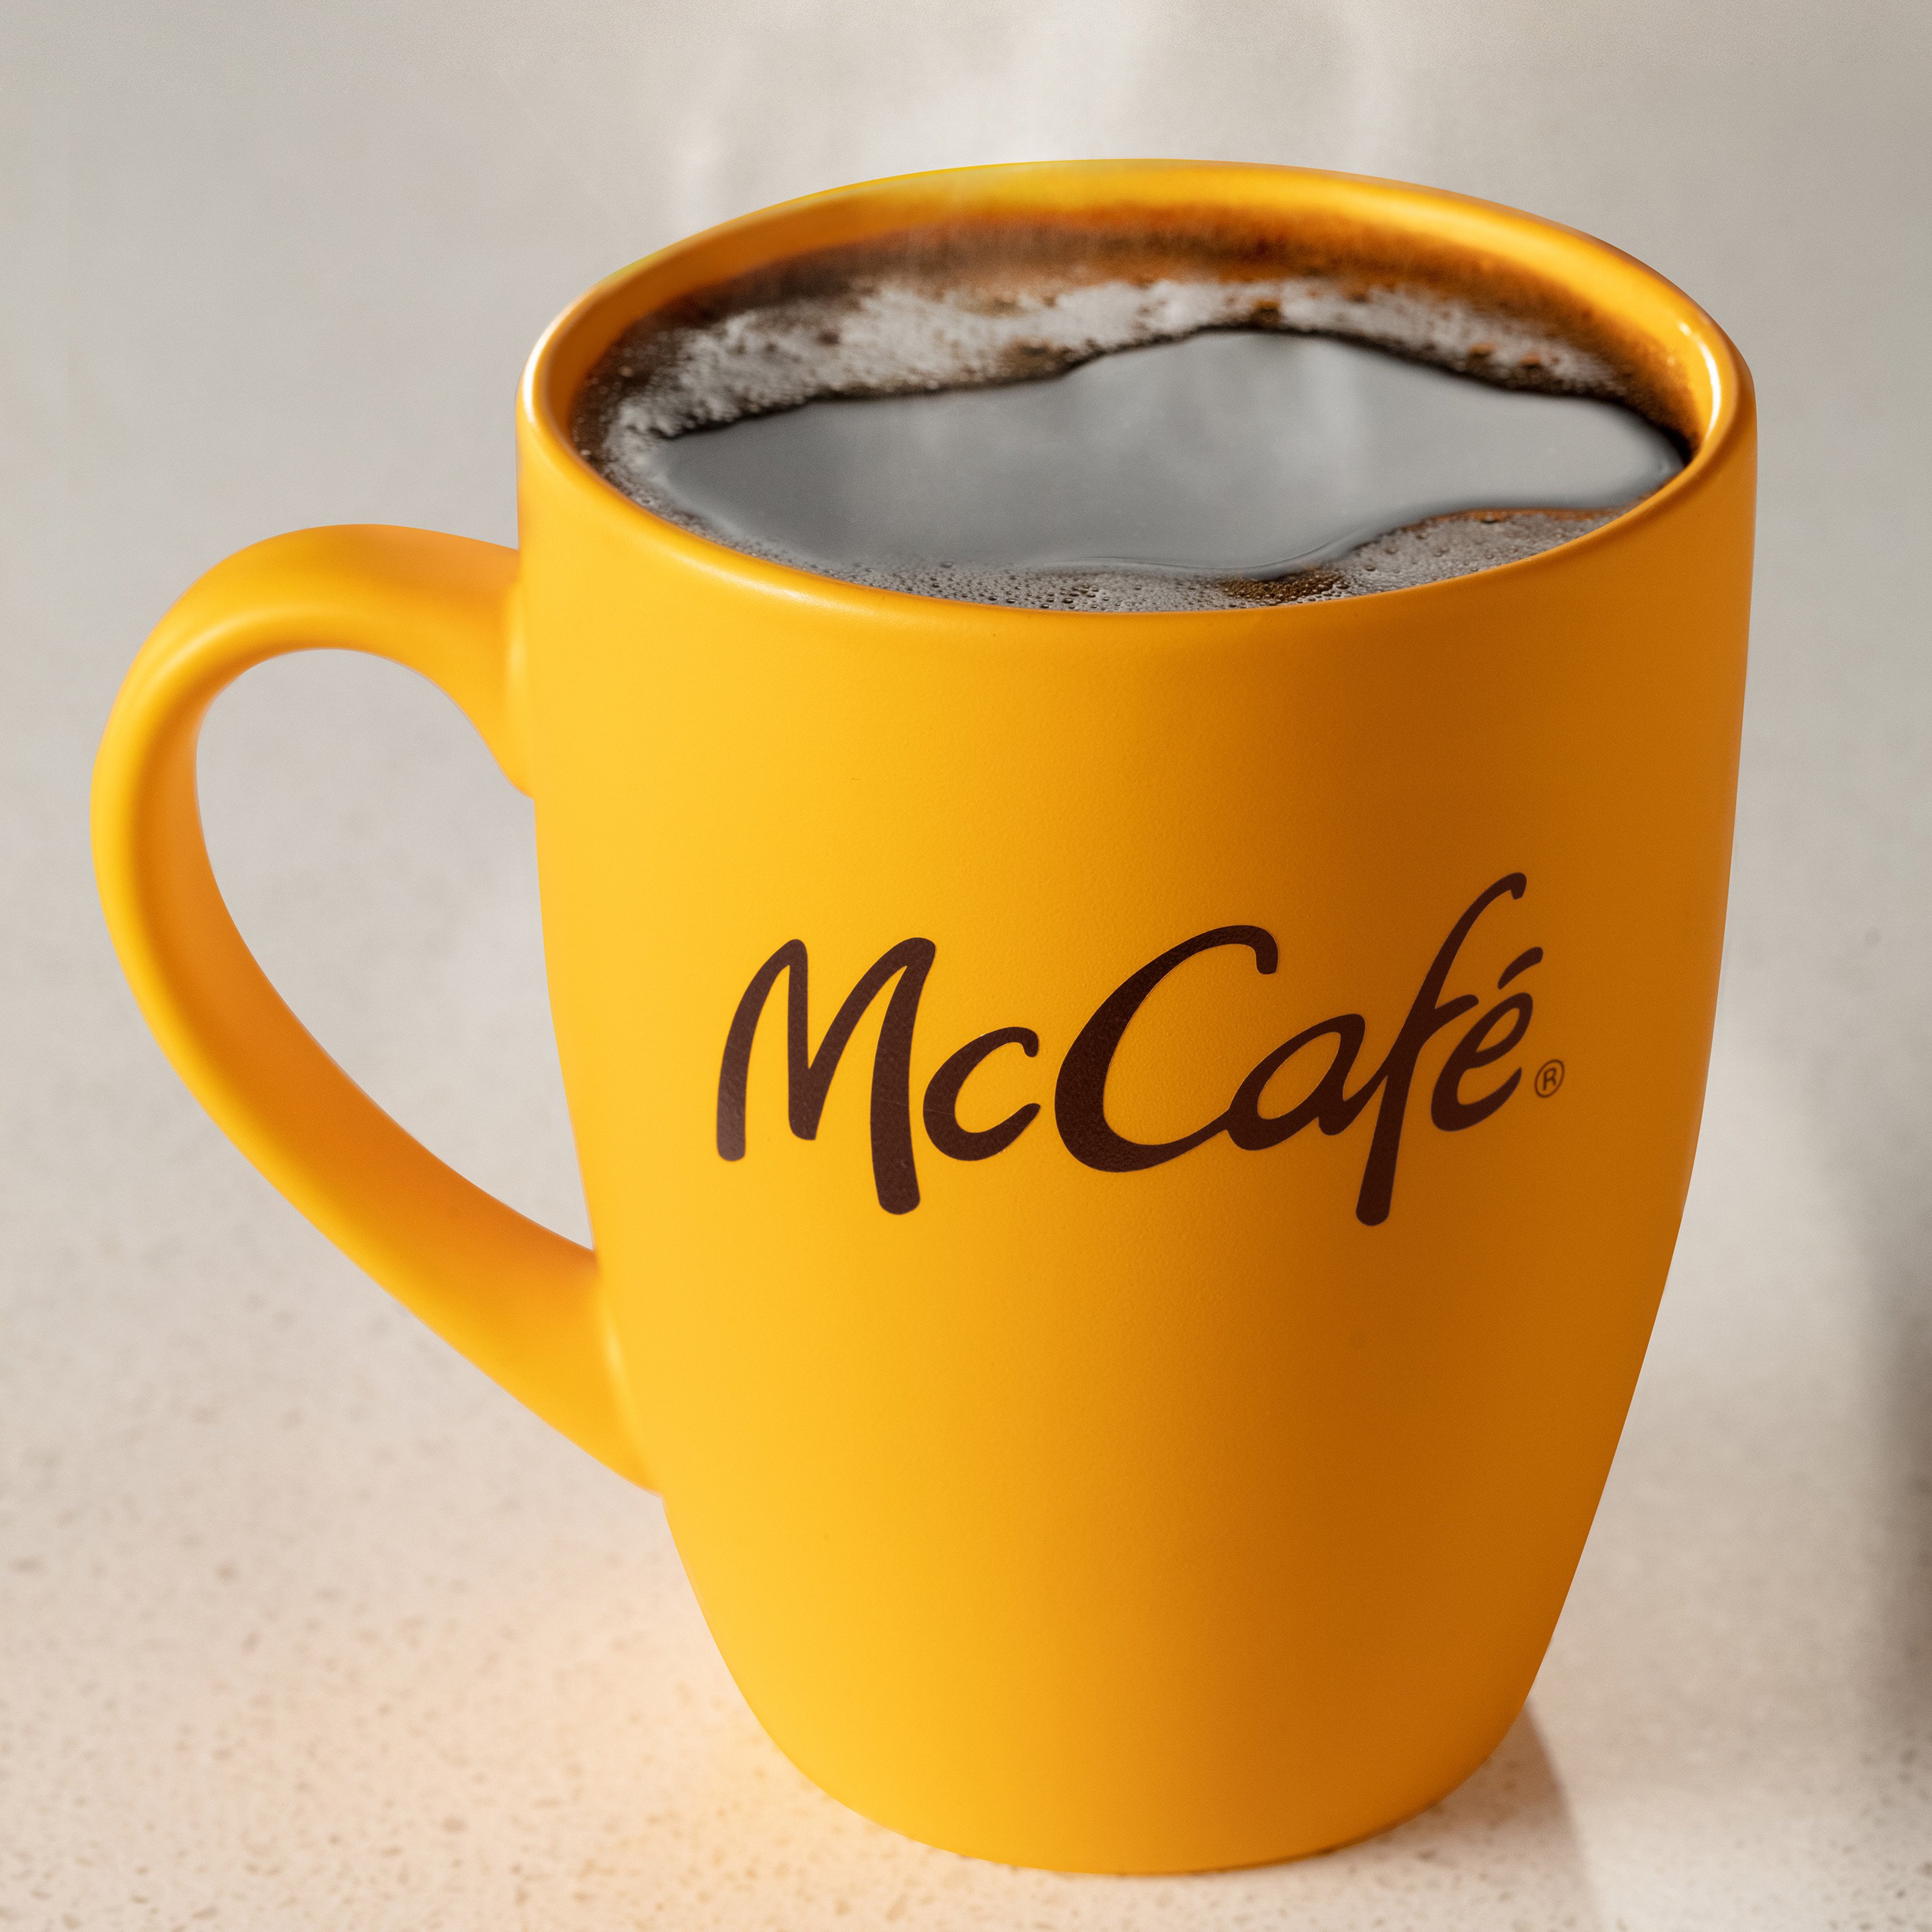 McCafe Premium Medium Dark Roast K-Cup Coffee Pods, 12 Count - 12 ea